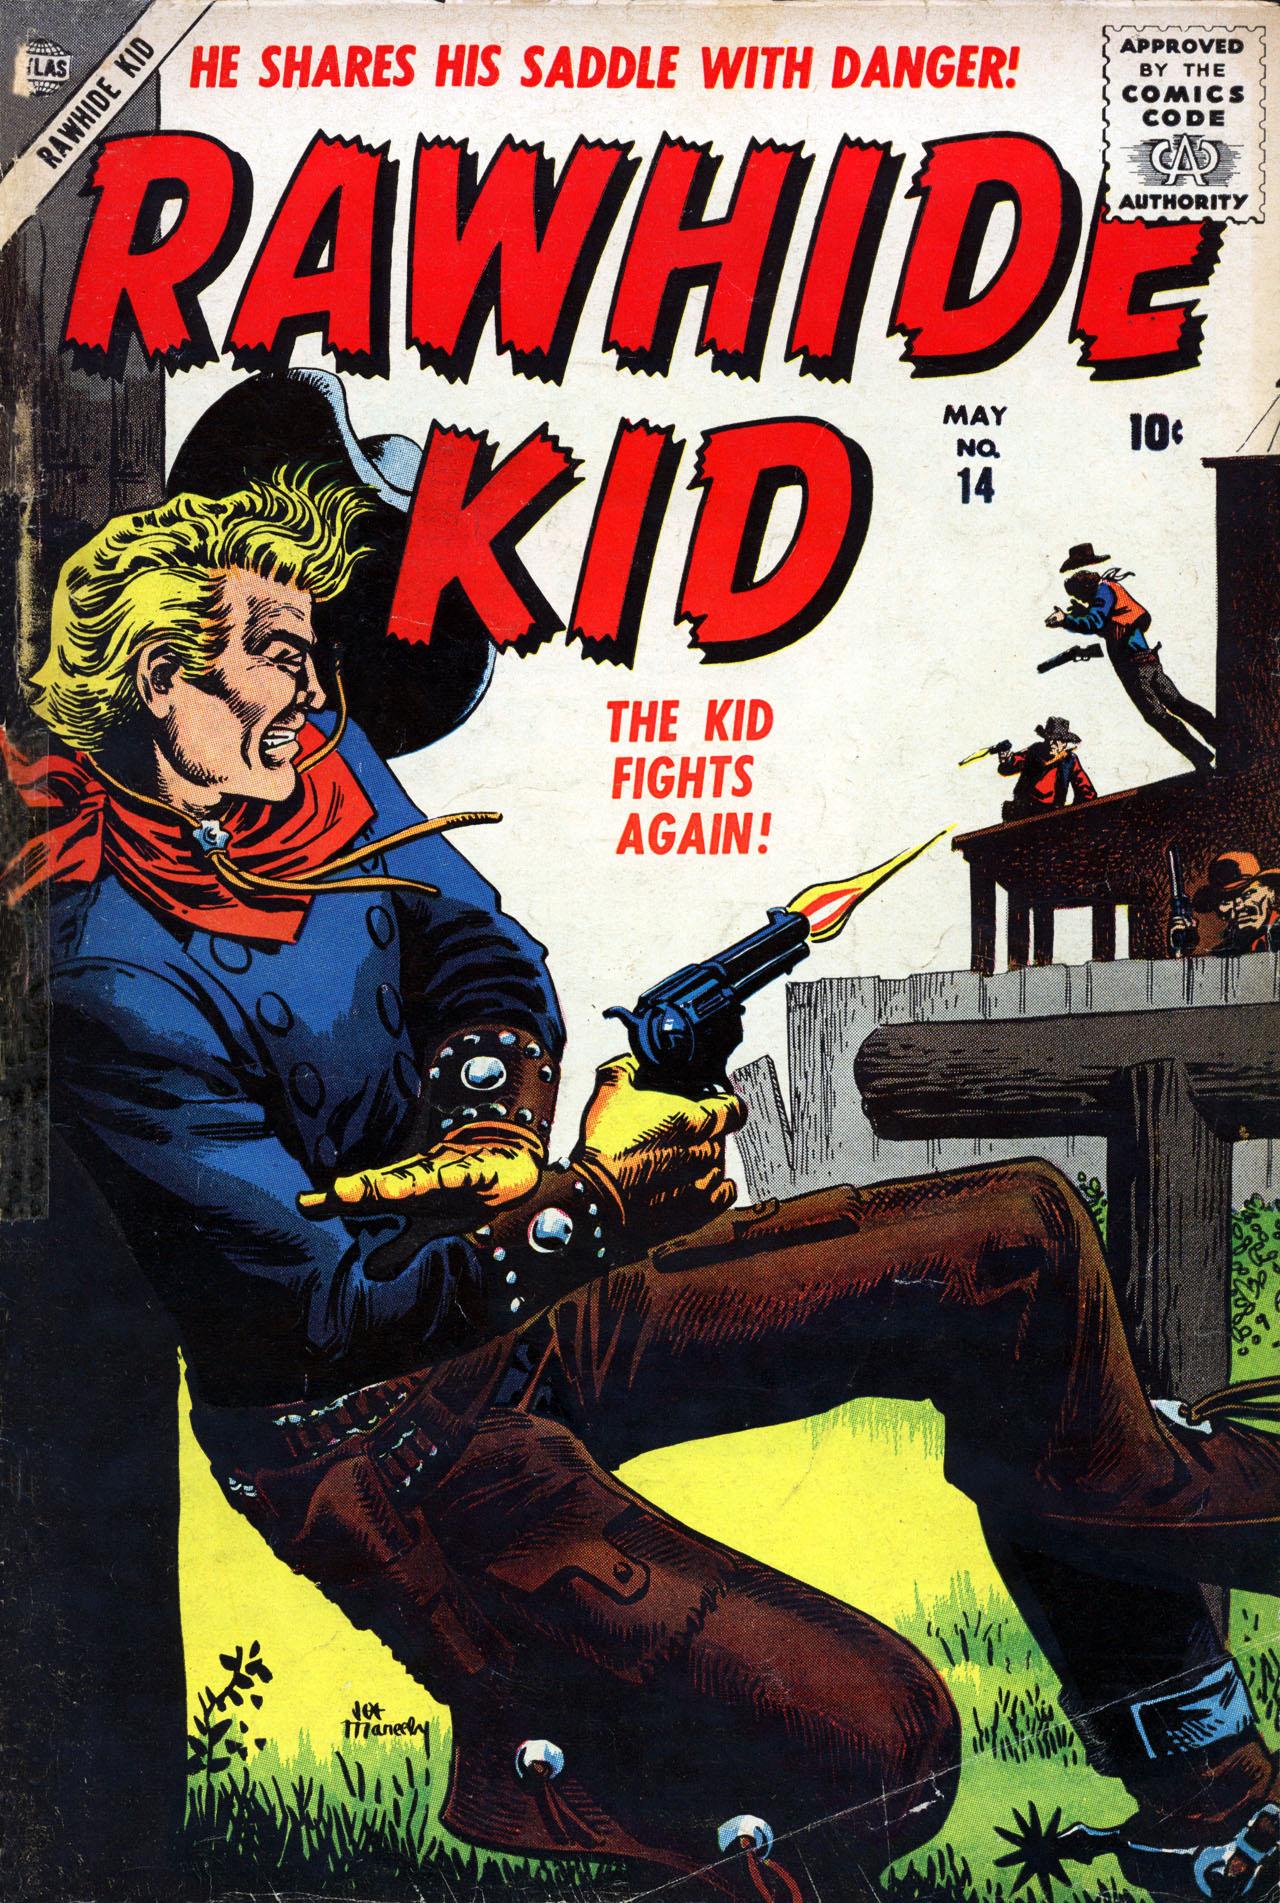 Rawhide Kid Vol. 1 #14